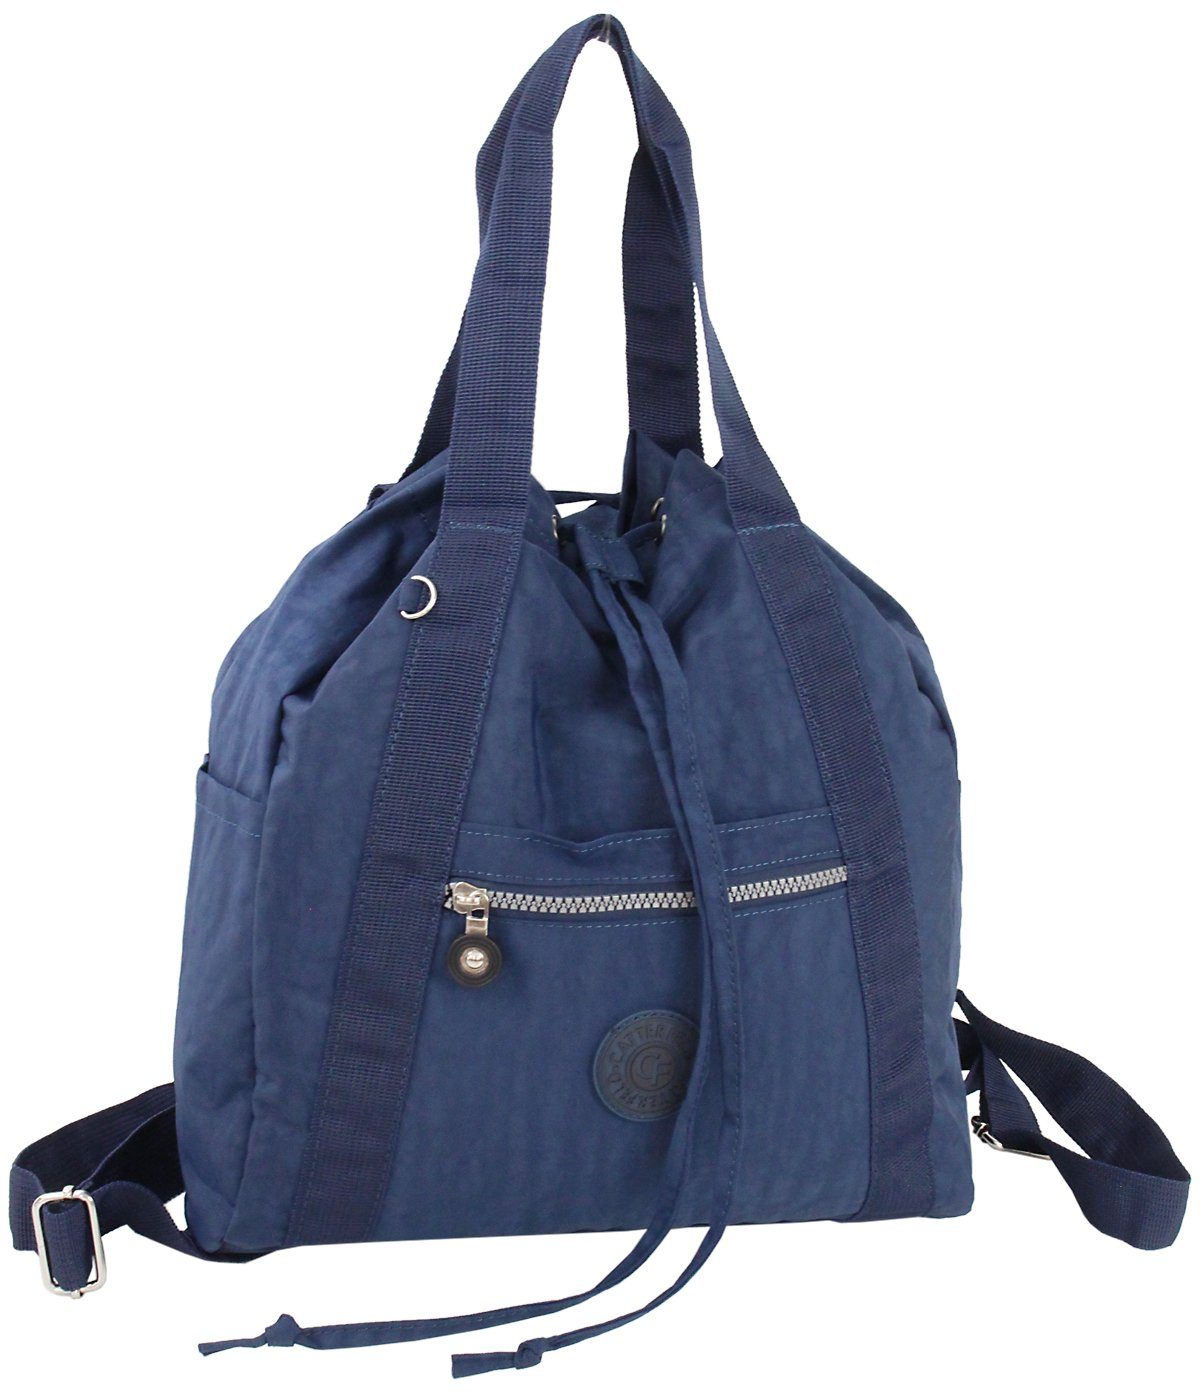 CF CATTERFELD Cityrucksack und Handtasche in Einem, 2in1 leichter Freizeitrucksack/Schultertasche, Leicht Navy-Blau